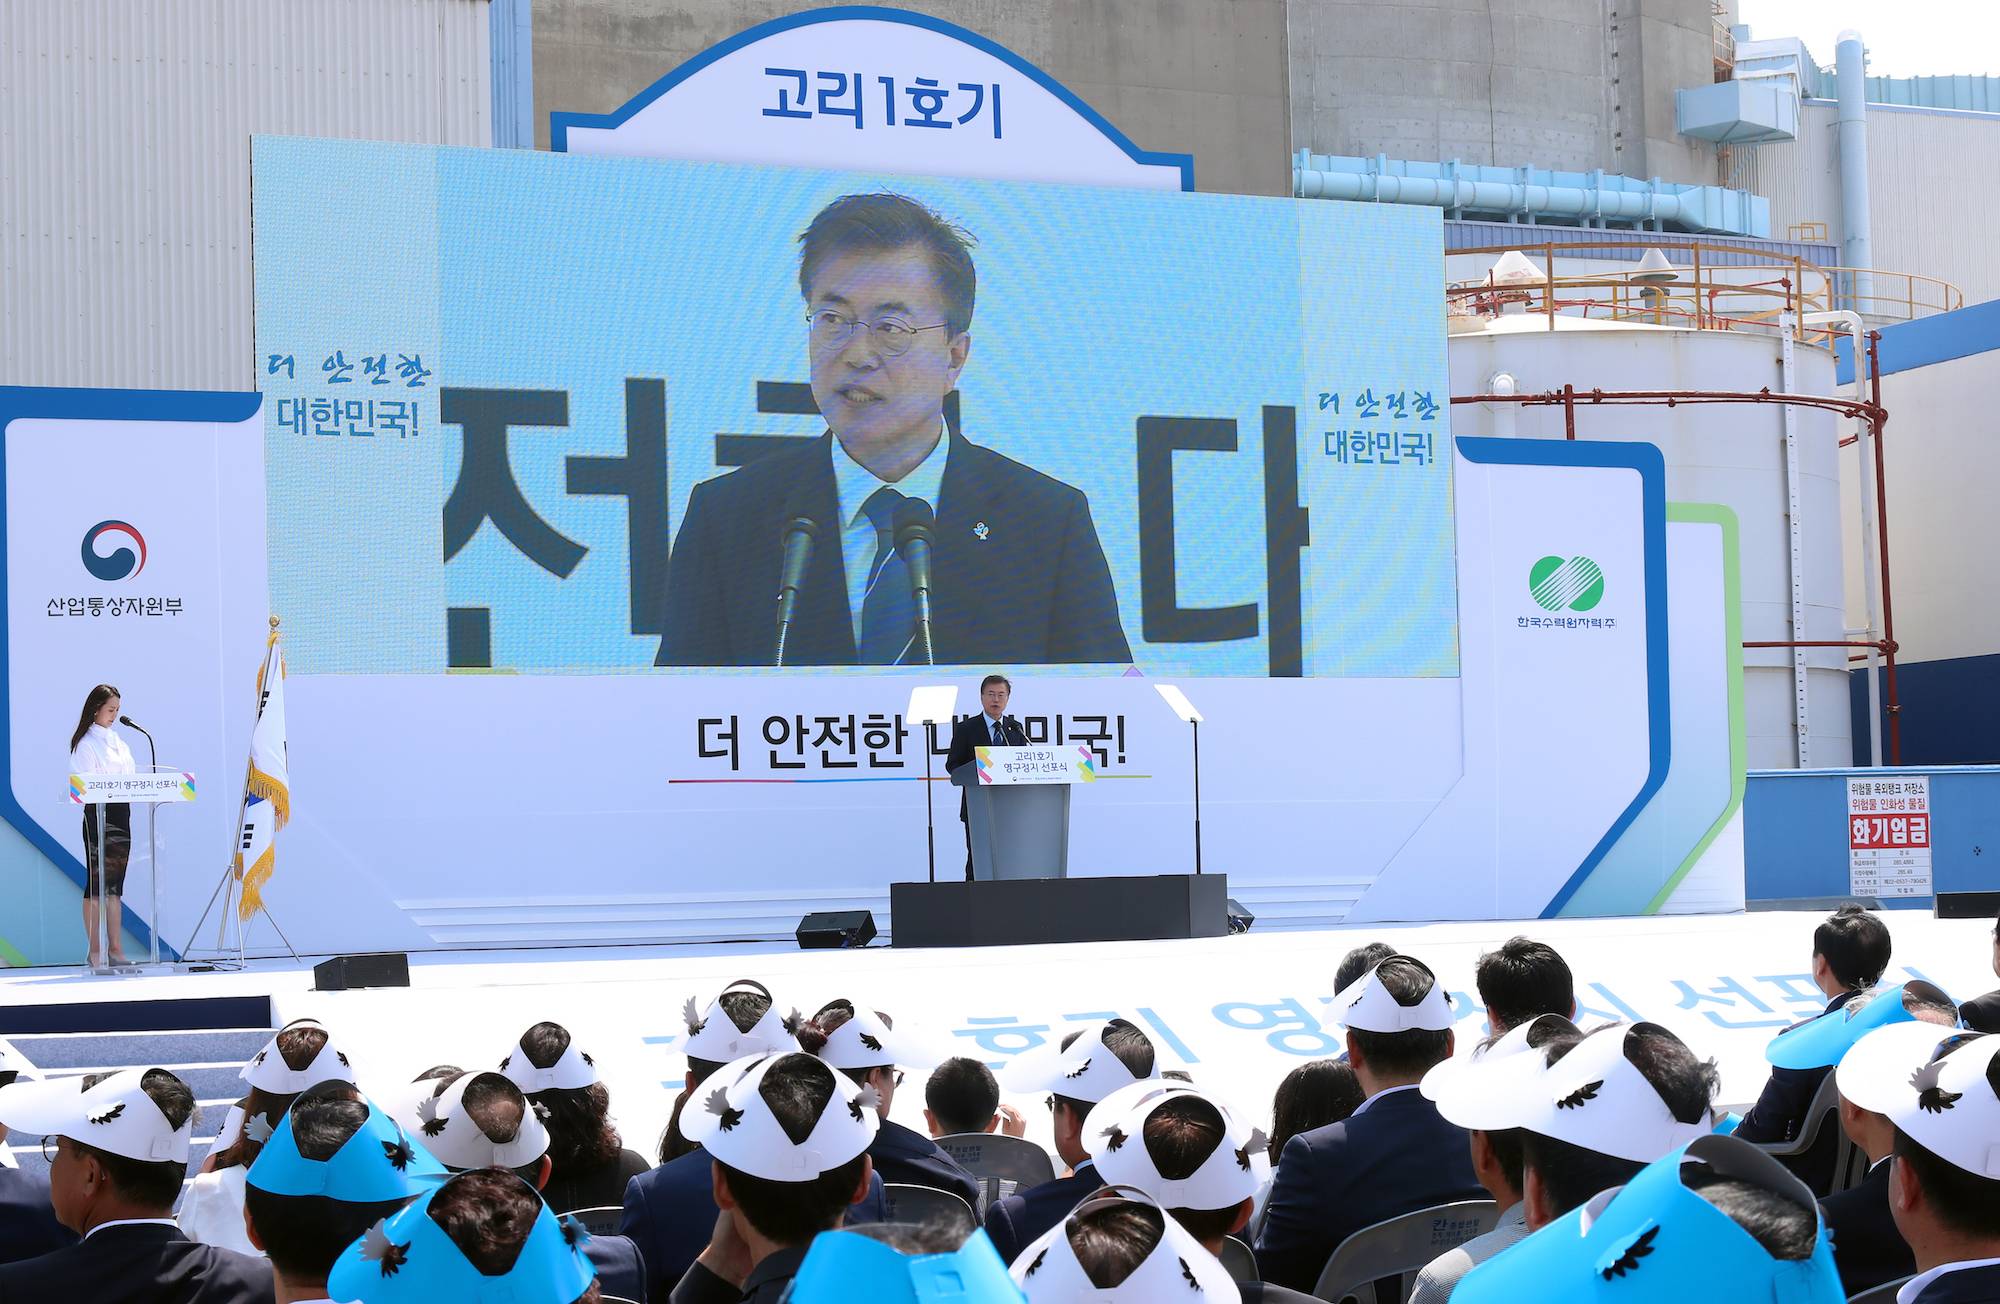 韓國也參一腳非核家園 替代能源選擇成為關注焦點